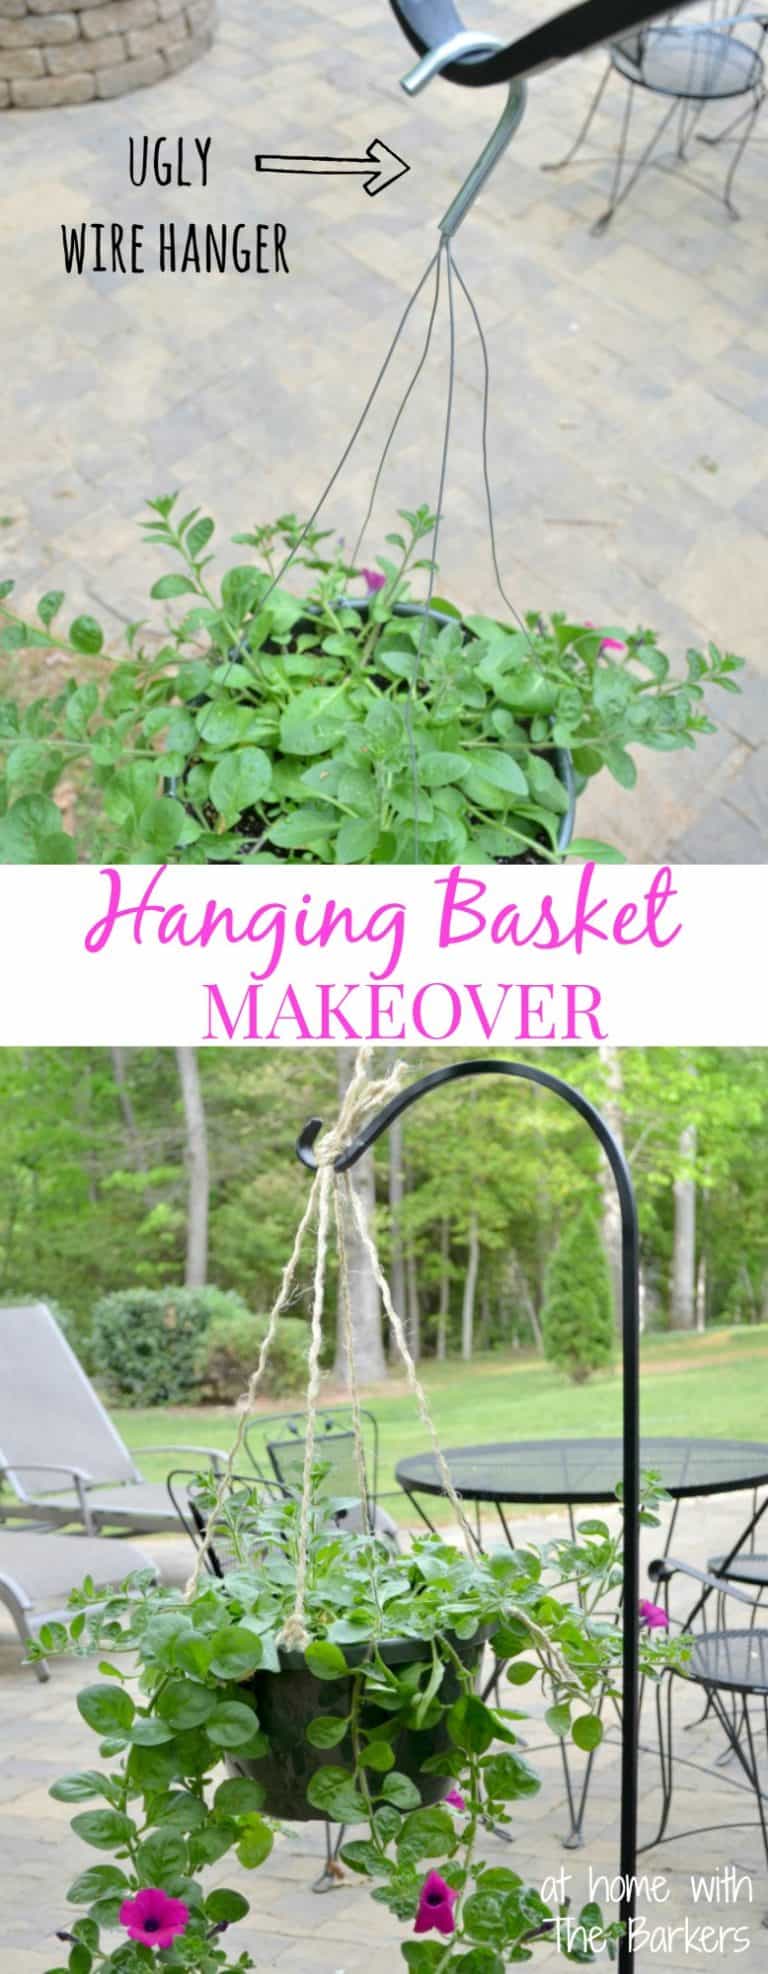 Hanging Basket Makeover